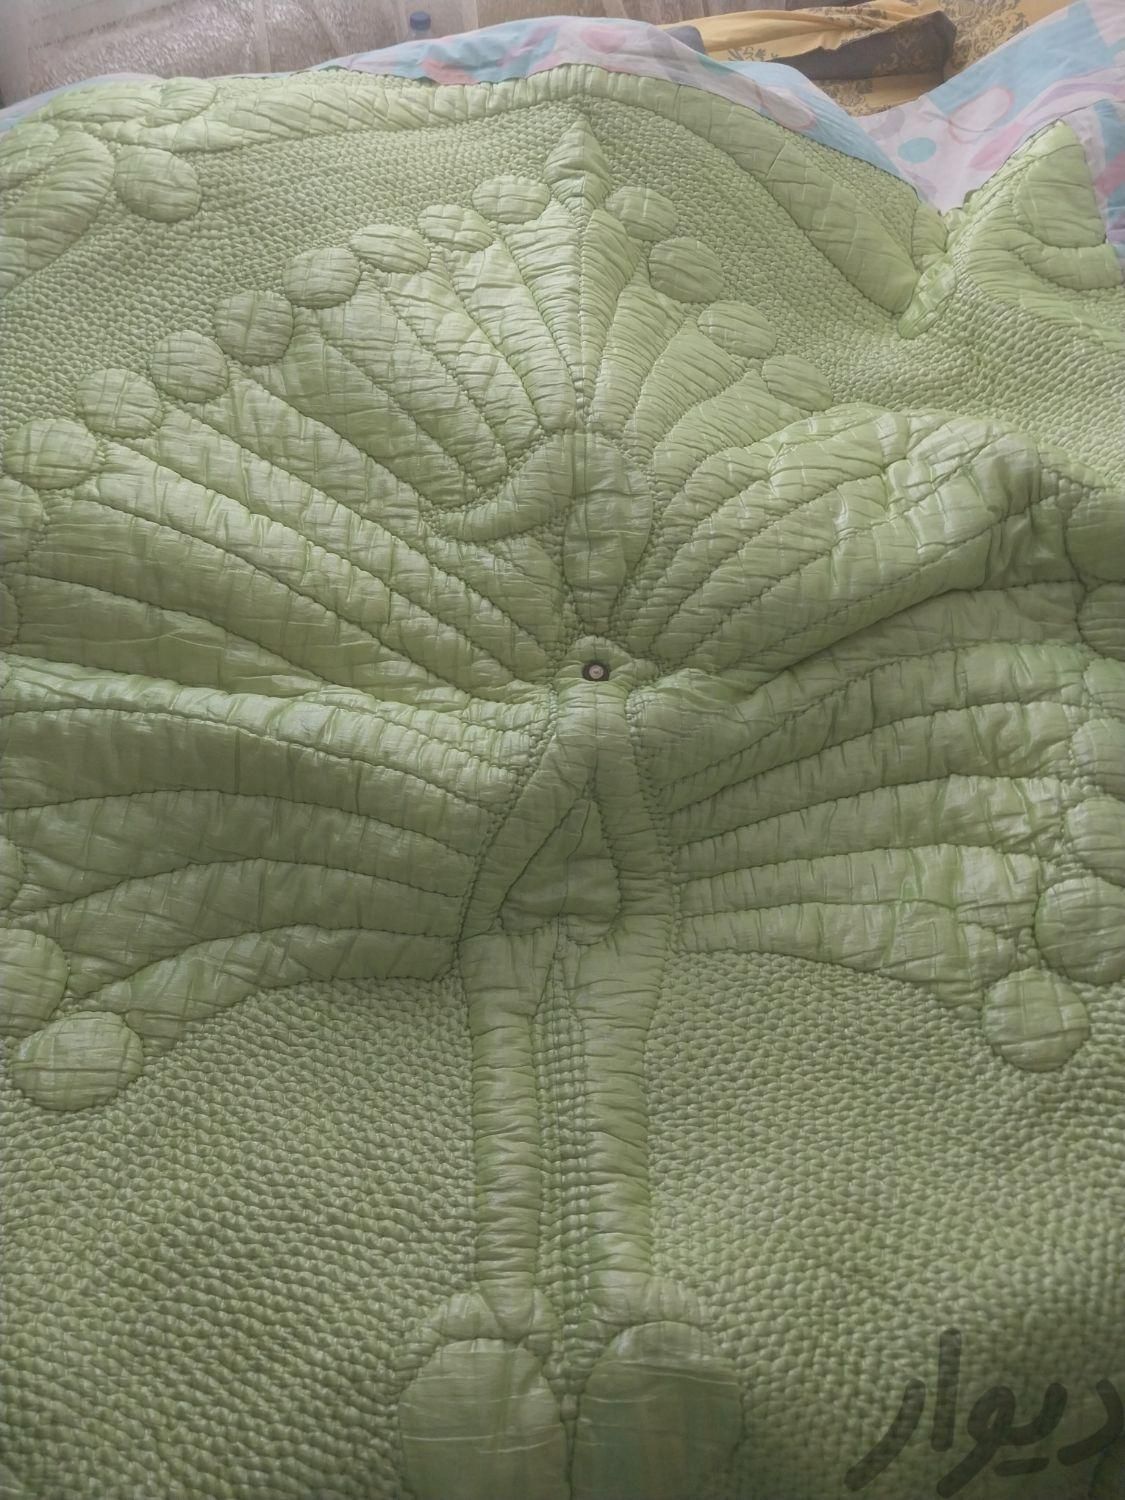 لحاف سبز با ملحفه|رختخواب، بالش و پتو|کرج, مهرشهر - فاز ۲|دیوار